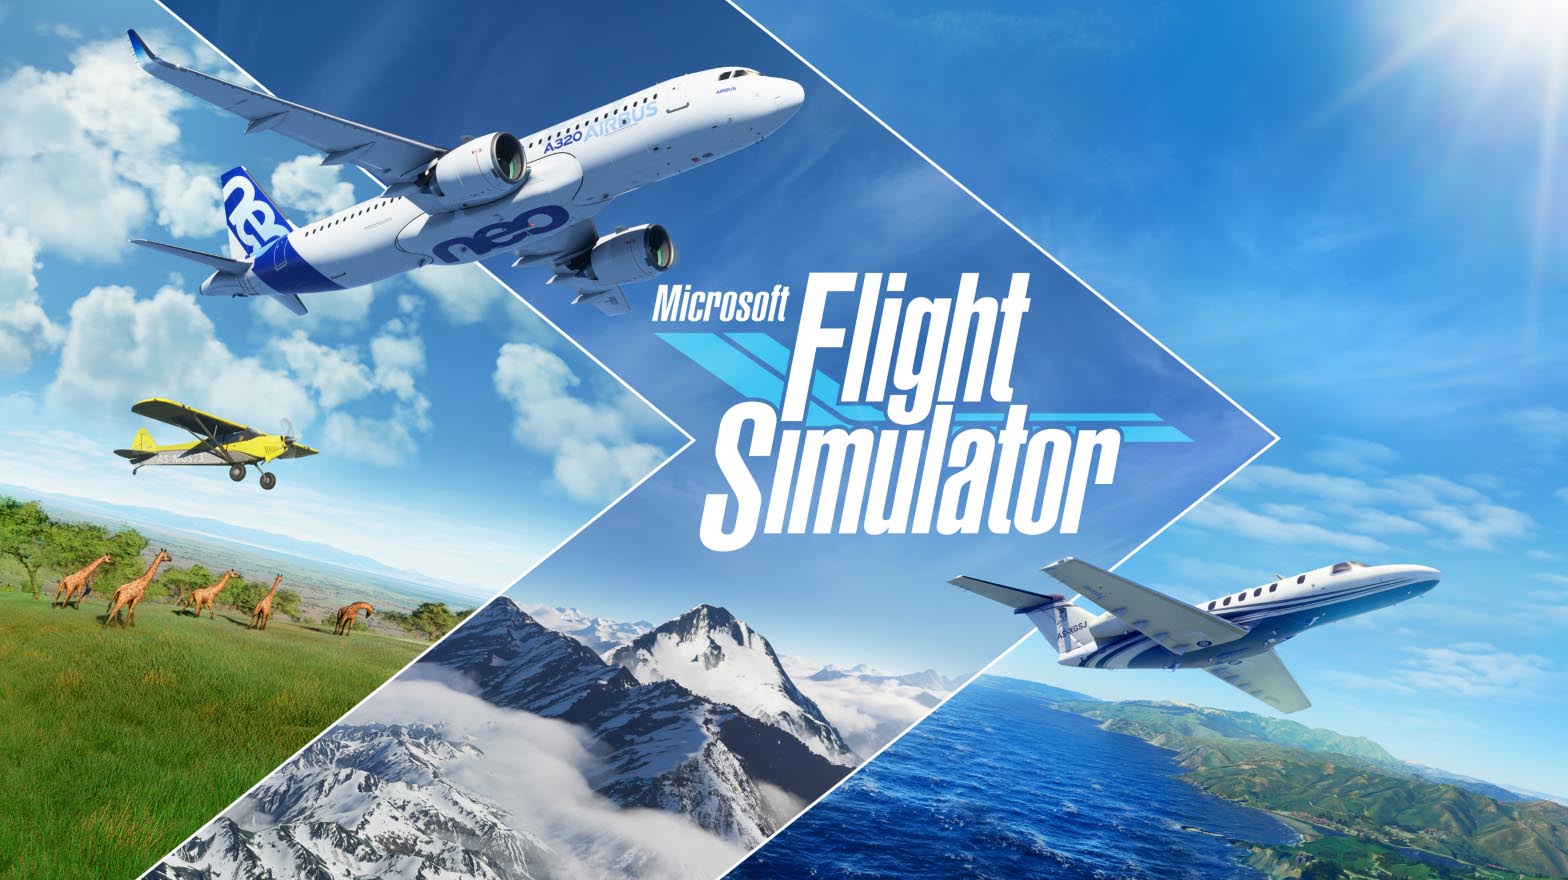 Review Game Microsoft Flight Simulator: Mengudara ke Dunia Penerbangan Virtual